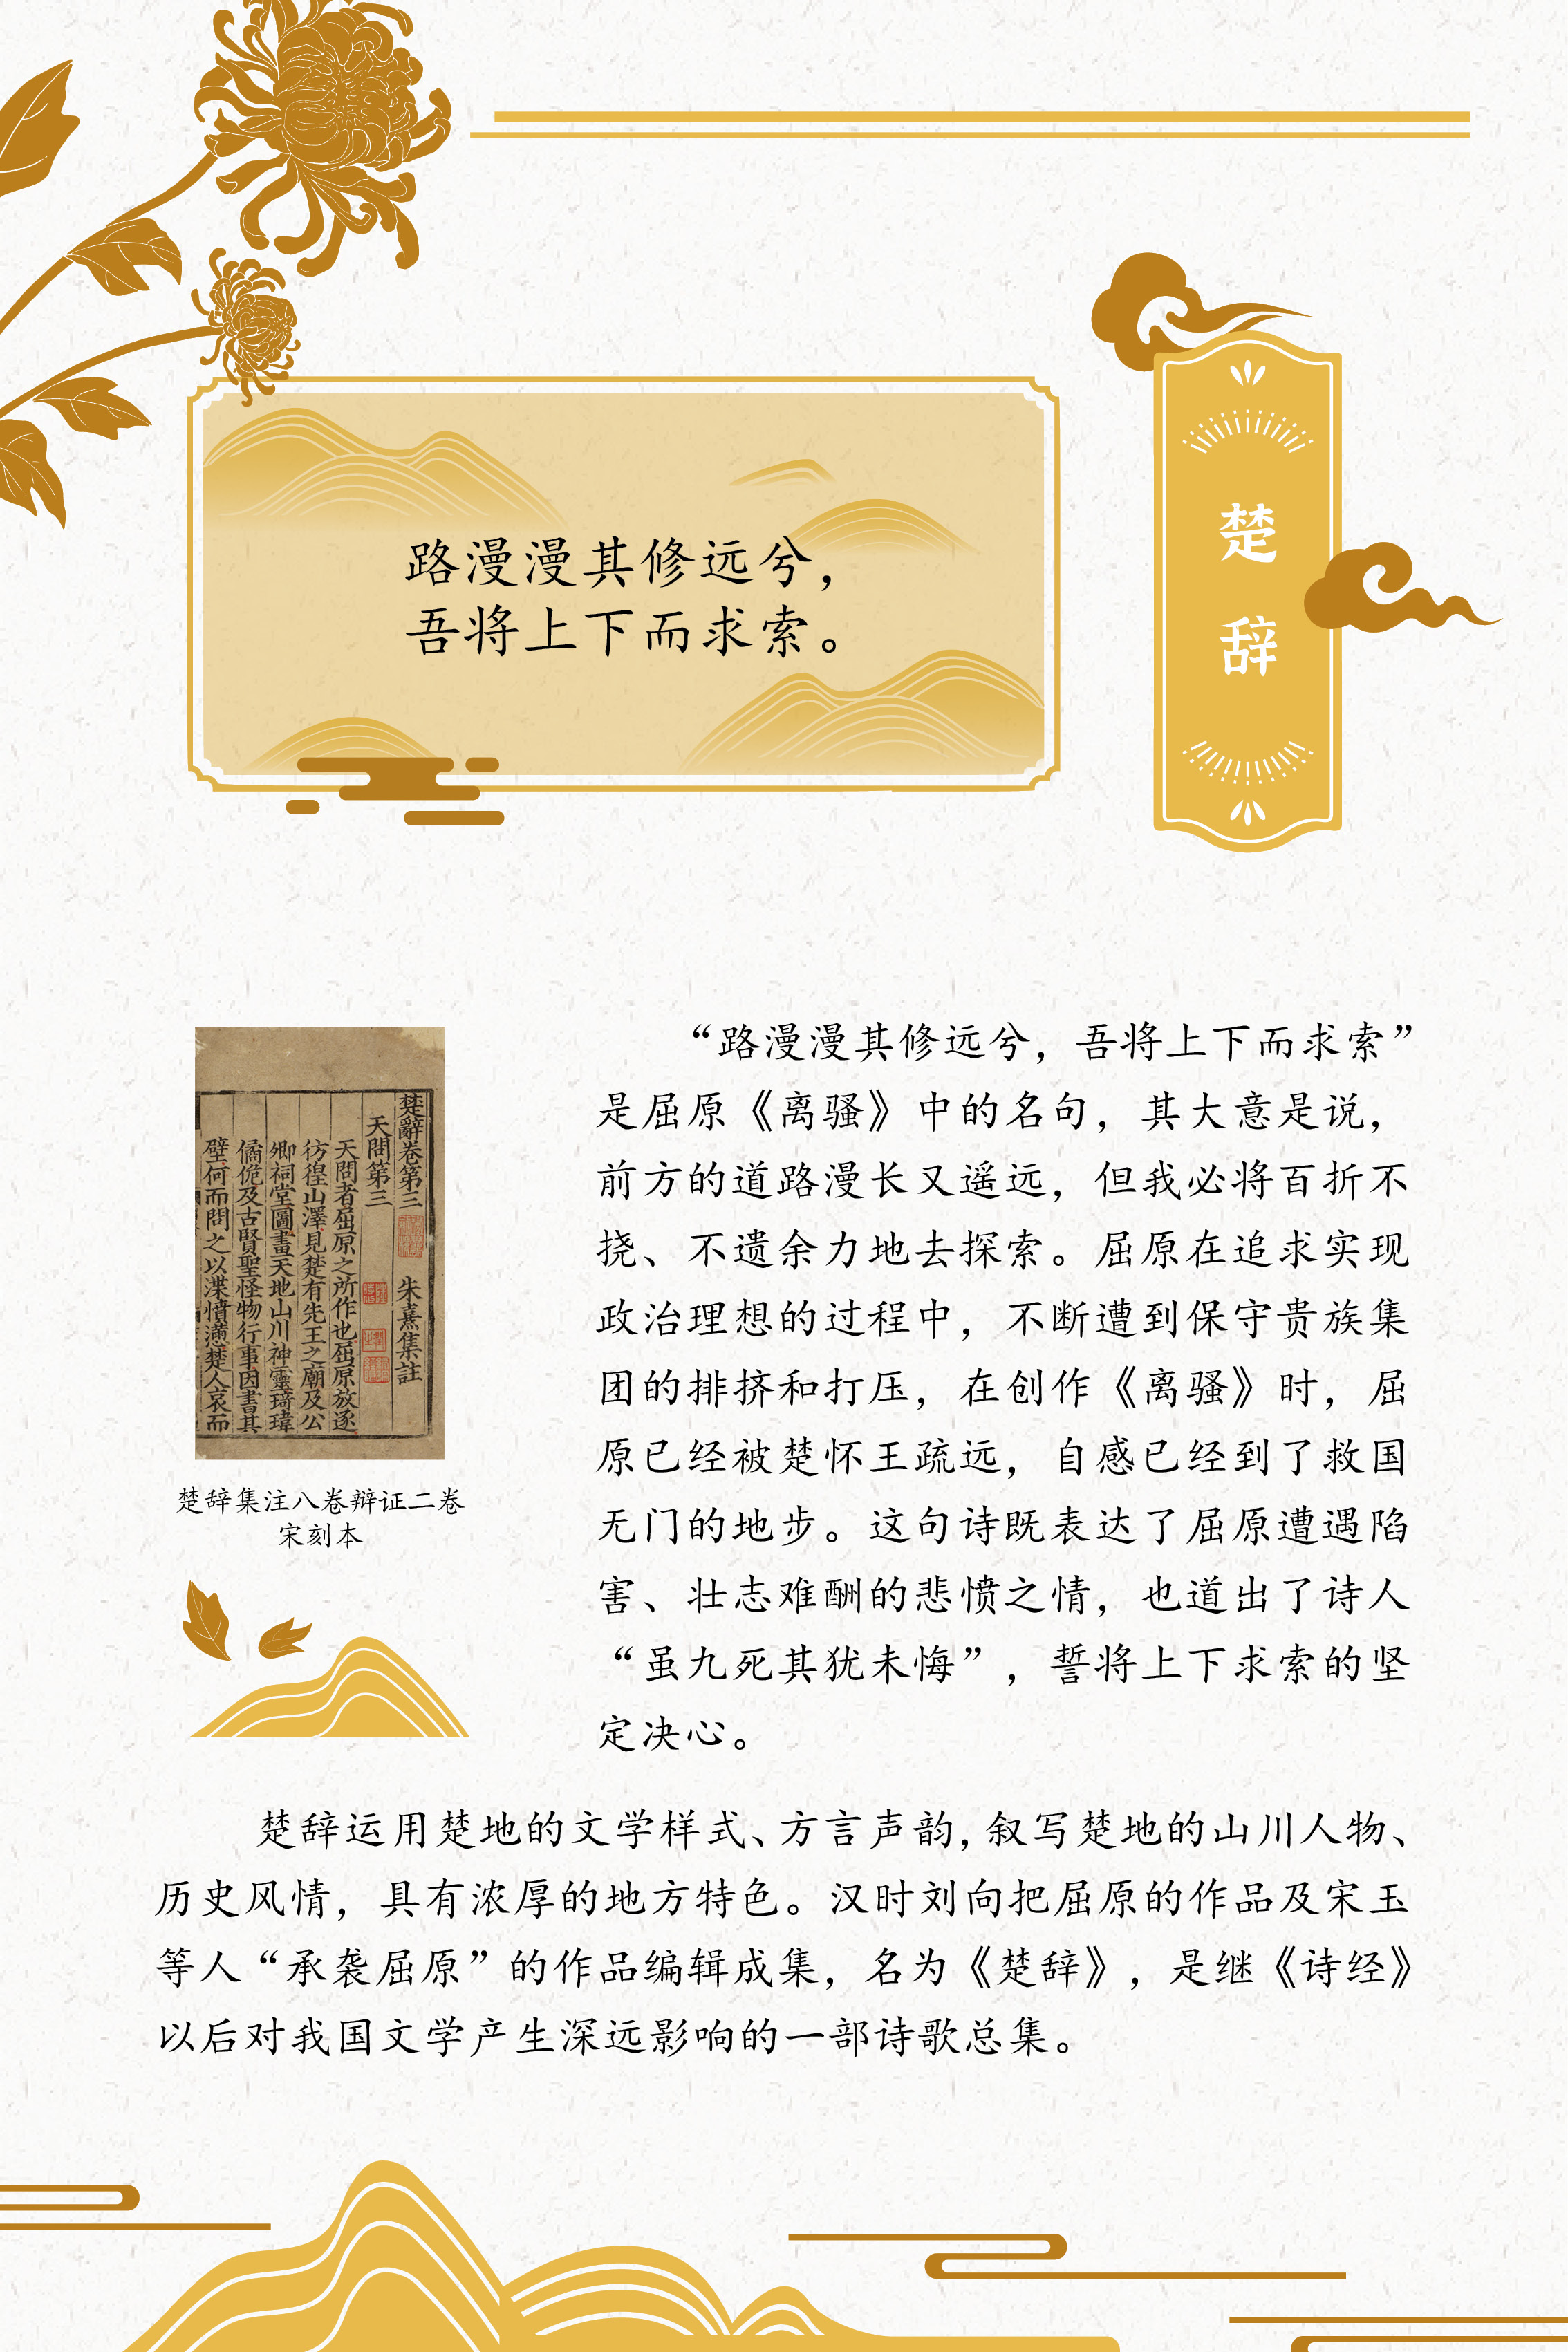 典籍里的中国智慧——《中华传统文化百部经典》阅读推广展_图37